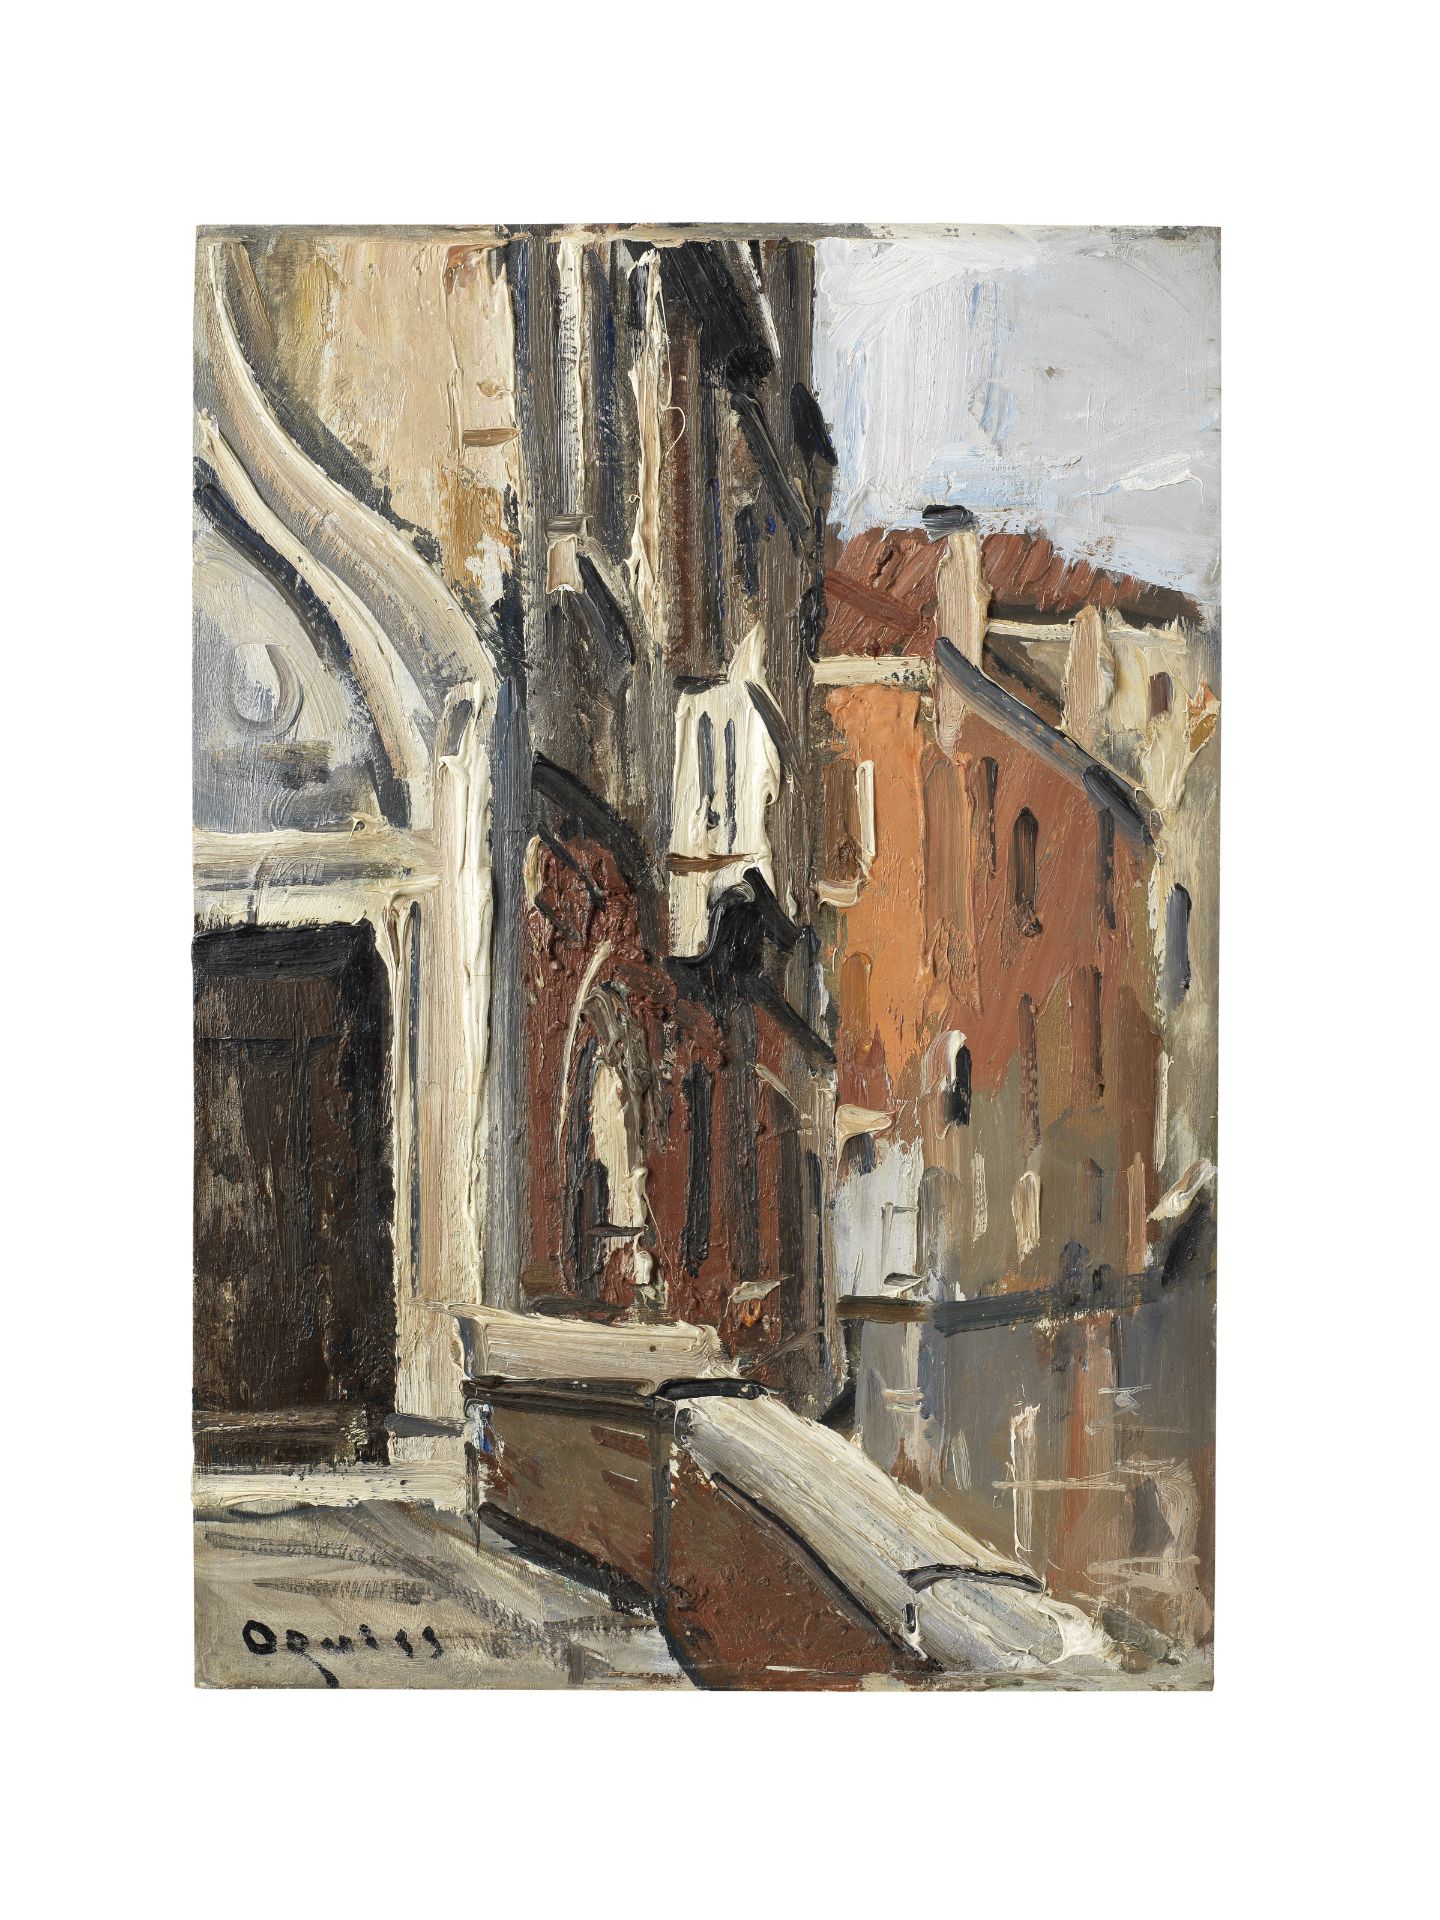 TAKANORI OGUISS (1901-1986) Venezia, Palazzo Soranzo Van Axel, Rio de Ca'Widmann (Painted in 1959)